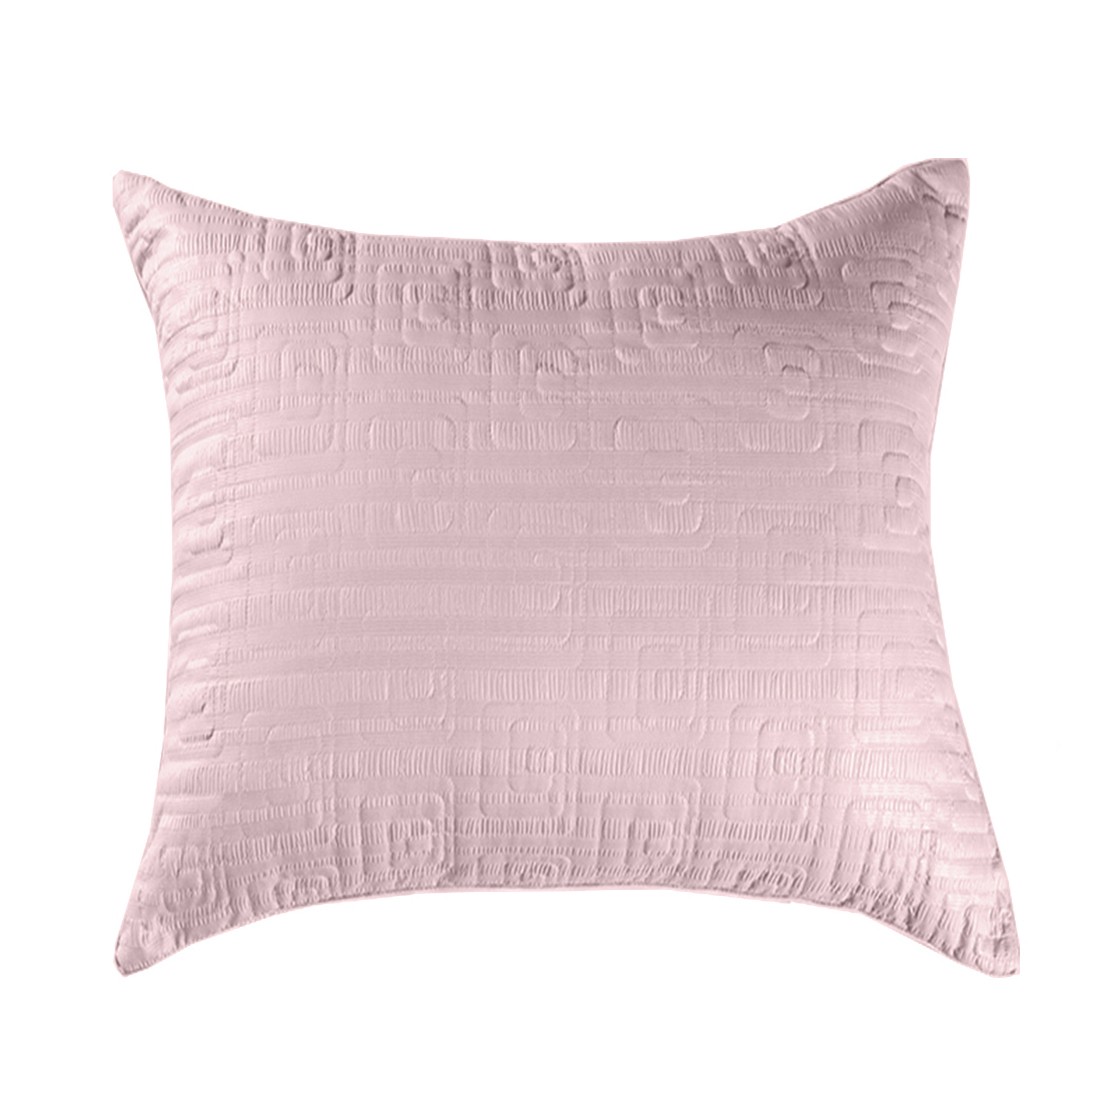 Подушка Rosaline цвет: розовый средняя (68х68), размер 68х68 pve759442 Подушка Rosaline цвет: розовый средняя (68х68) - фото 1